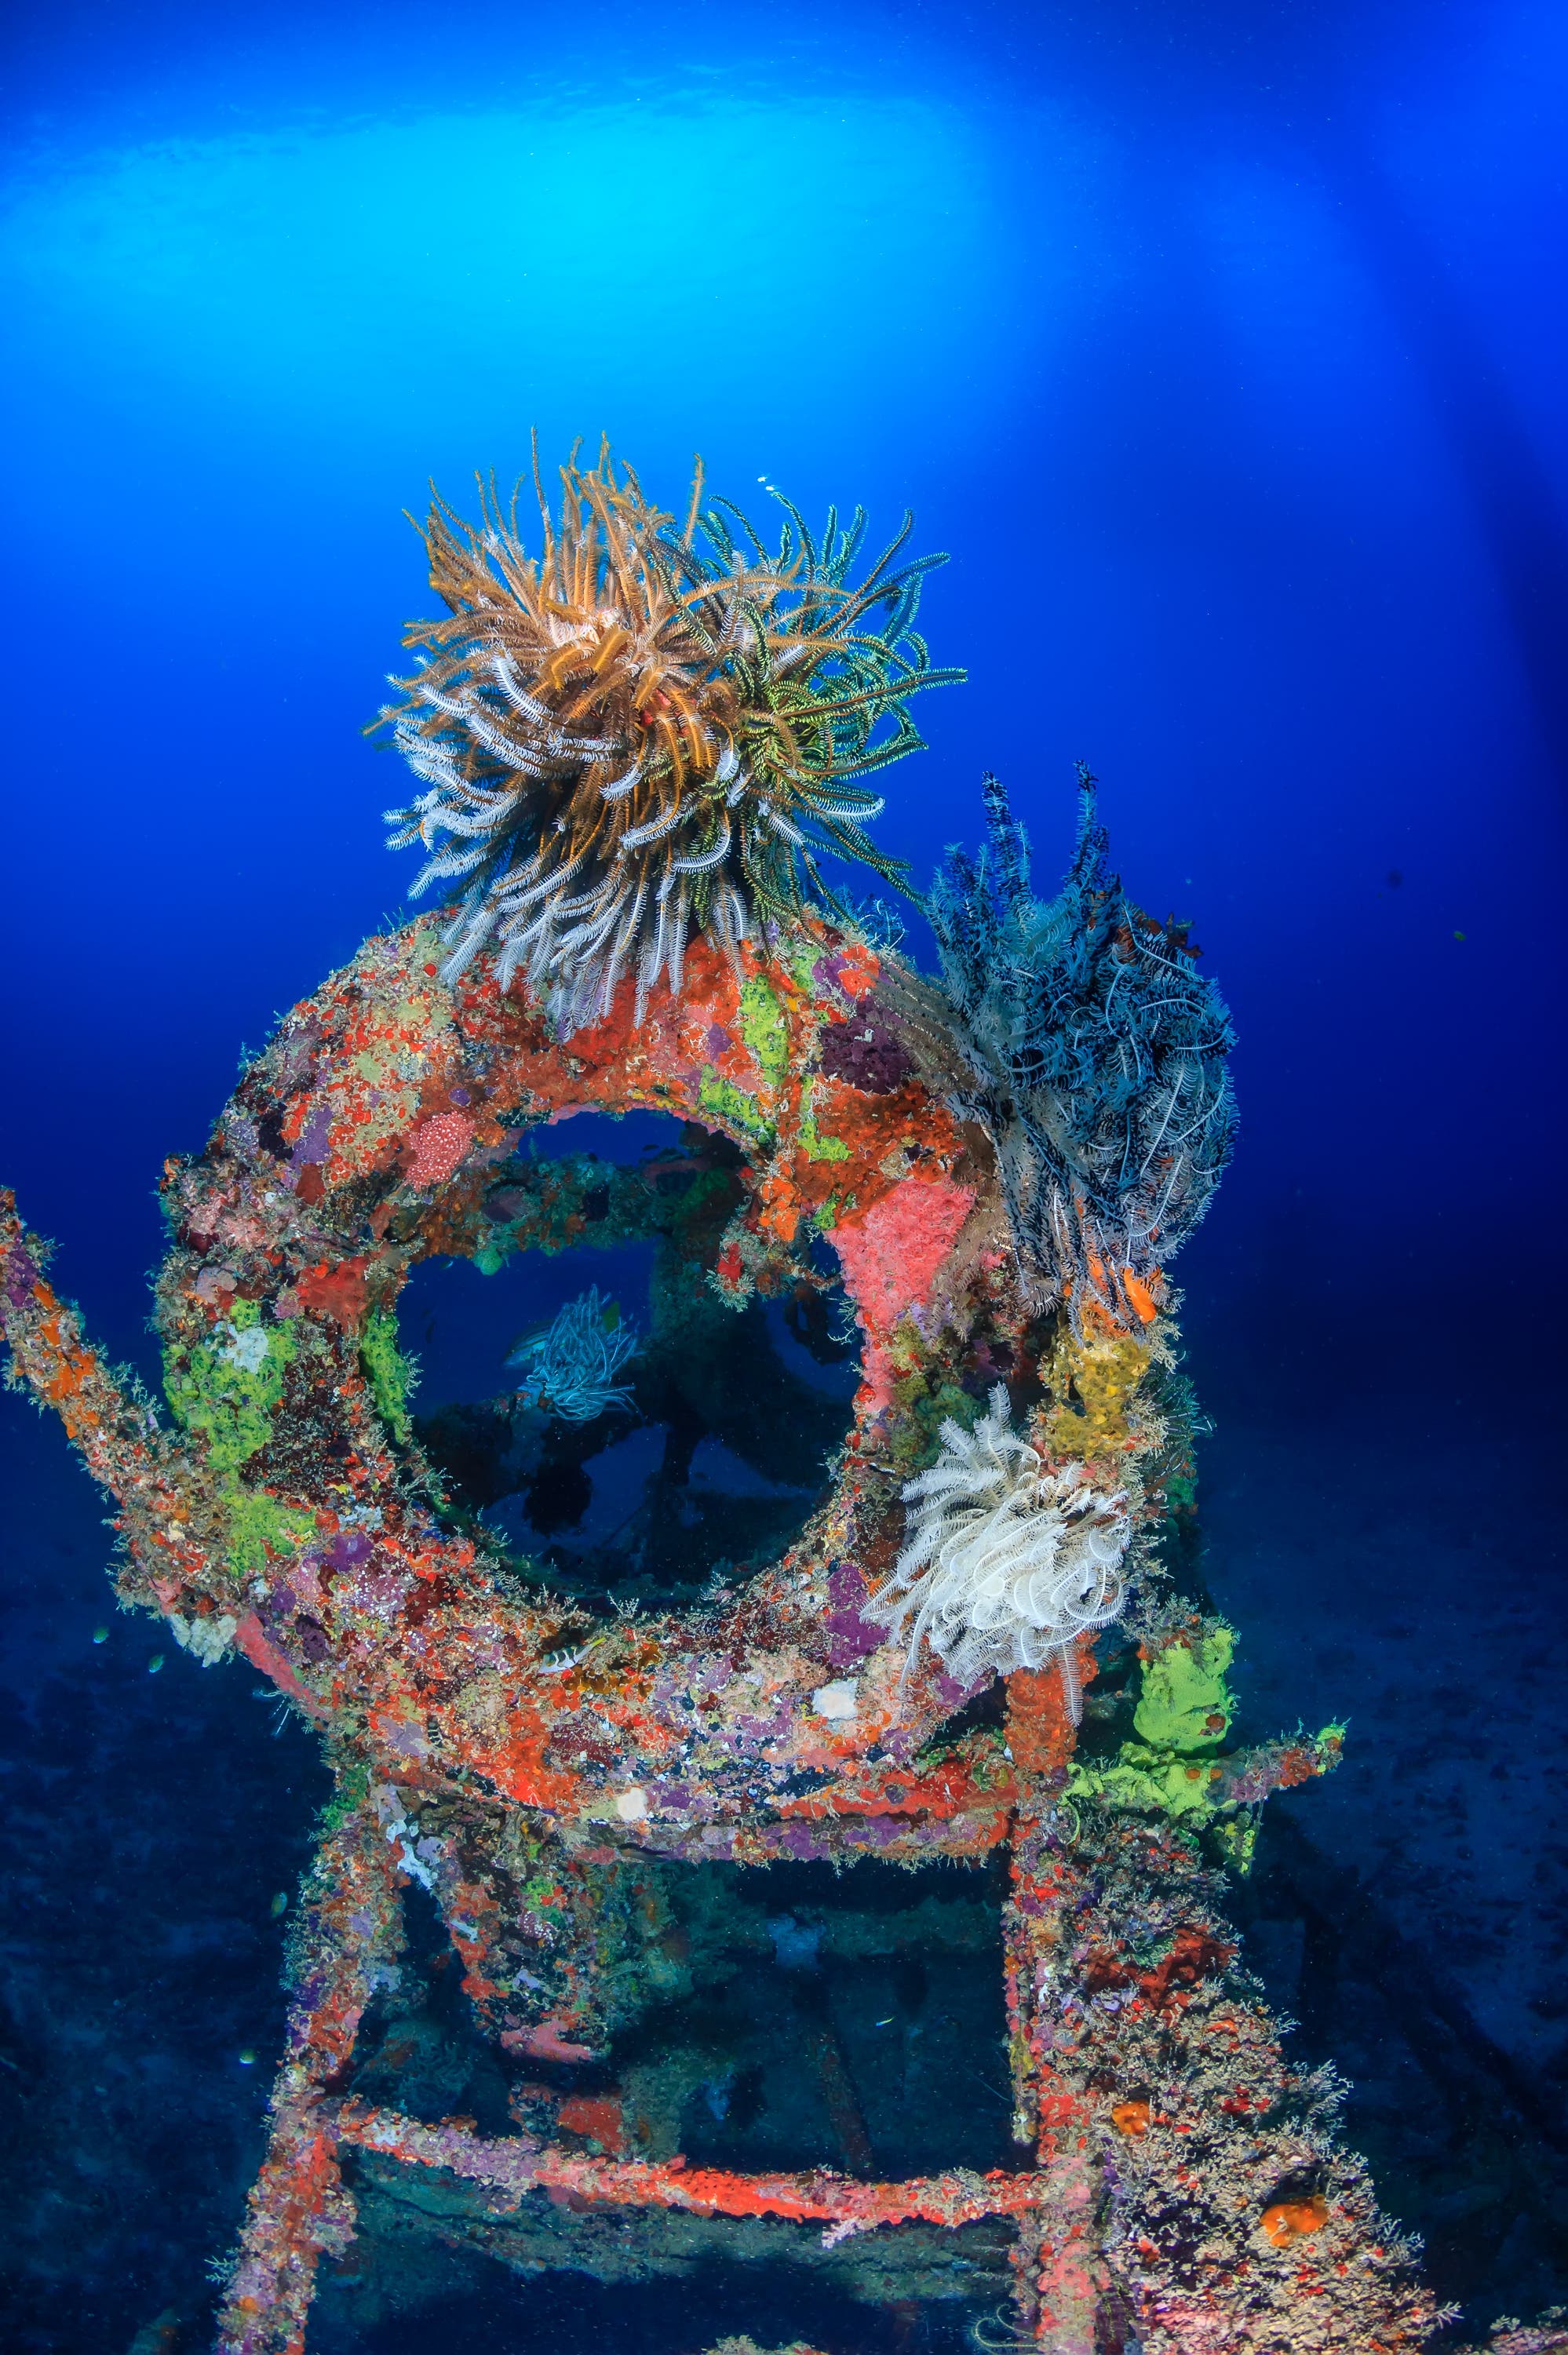 Schiffswracks bilden für Lebewesen einfach eine geeignete Struktur, um sich darauf niederzulassen. Sie werden in kurzer Zeit als künstliche Riffe besiedelt und dauerhaft genutzt – fast gleich, in welcher Wassertiefe.